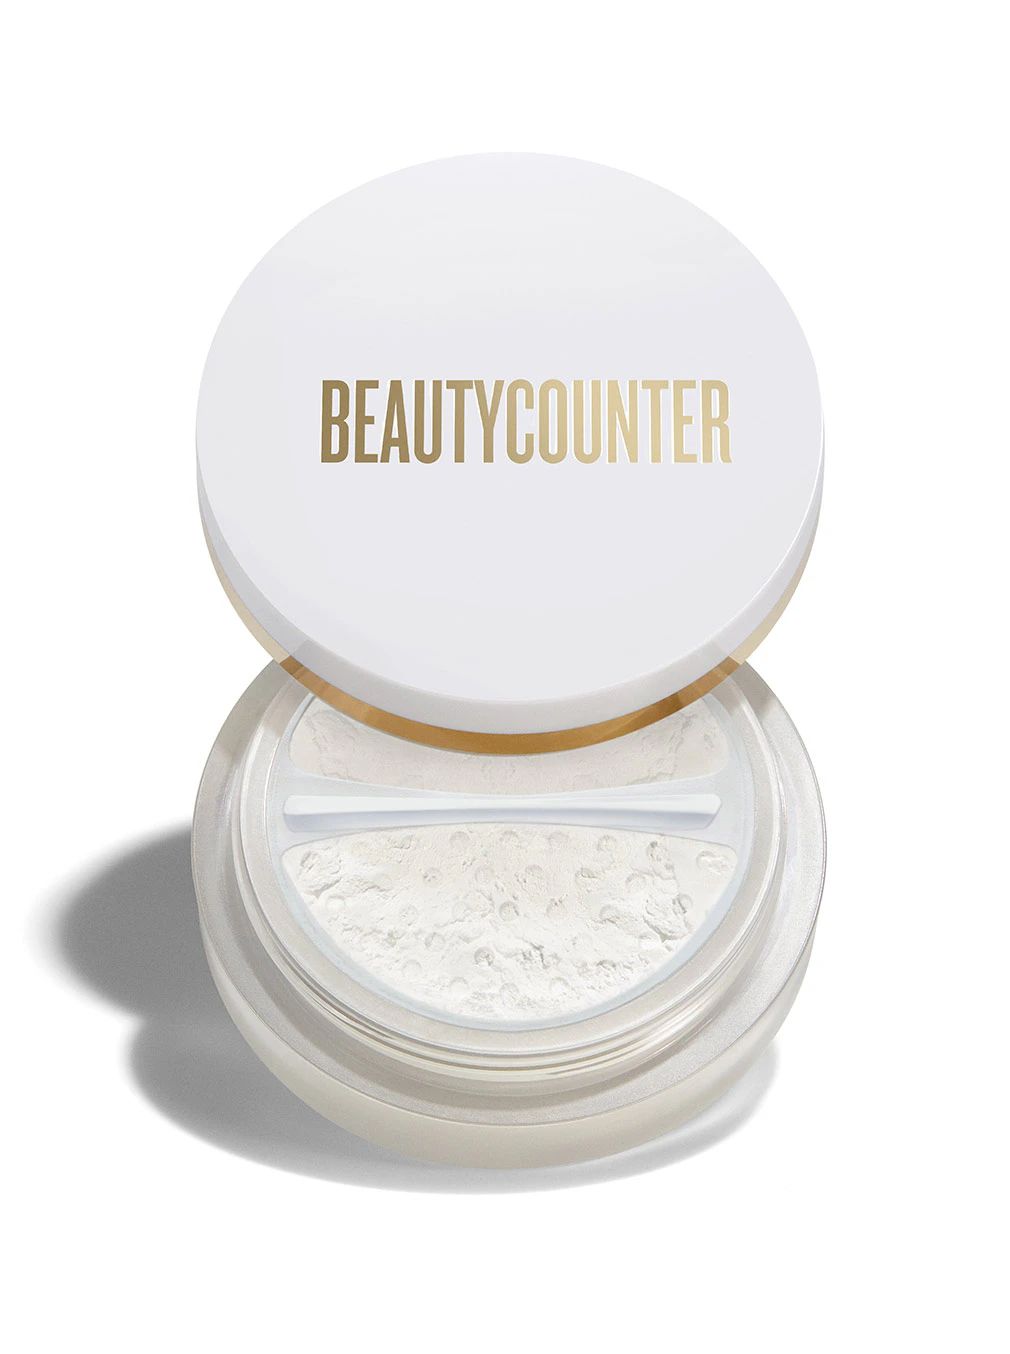 Mattifying Powder | Beautycounter.com